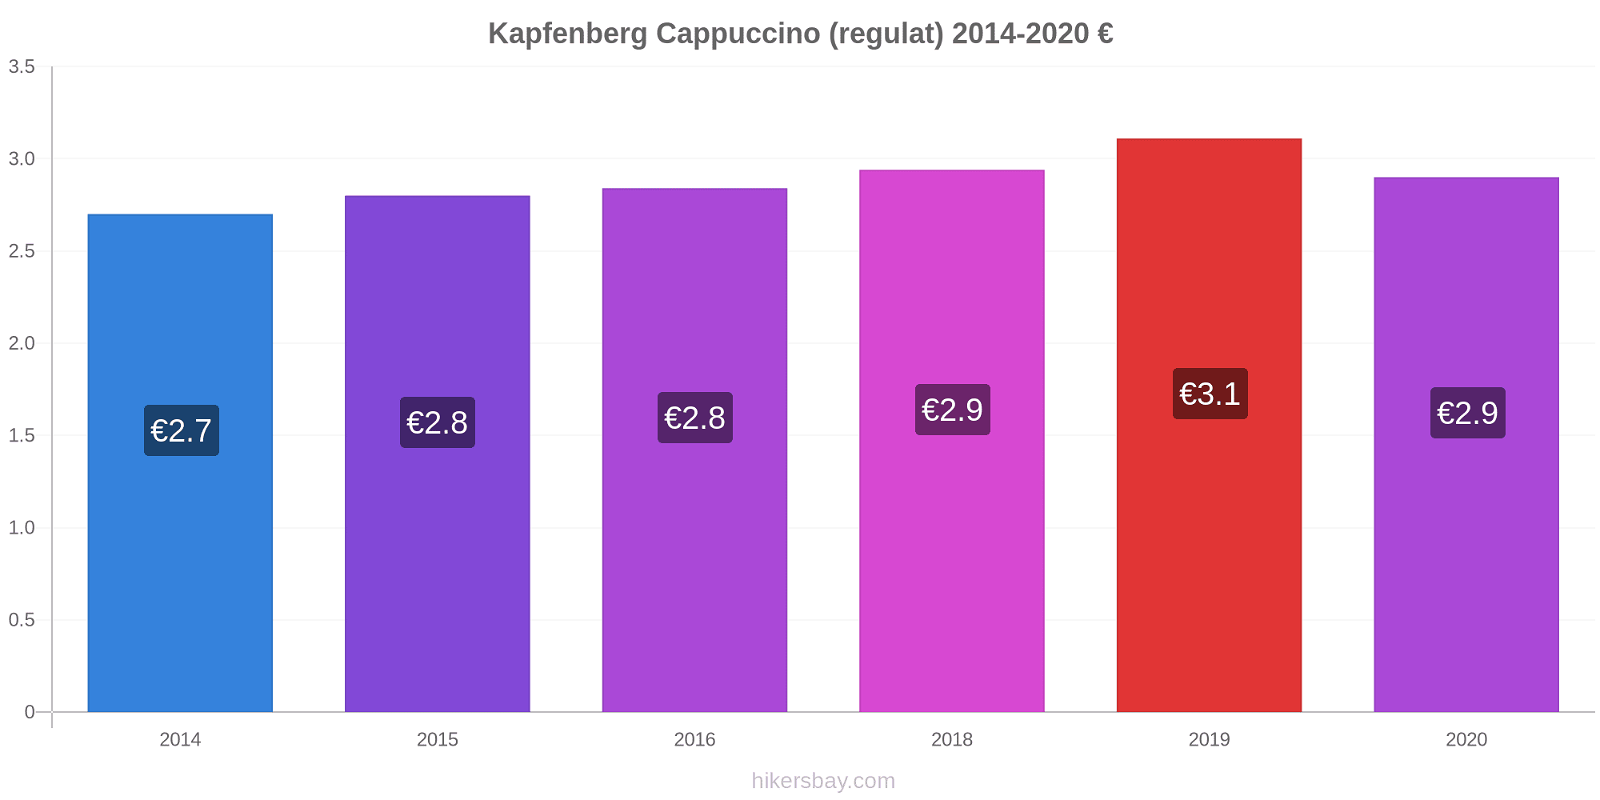 Kapfenberg modificări de preț Cappuccino (regulat) hikersbay.com